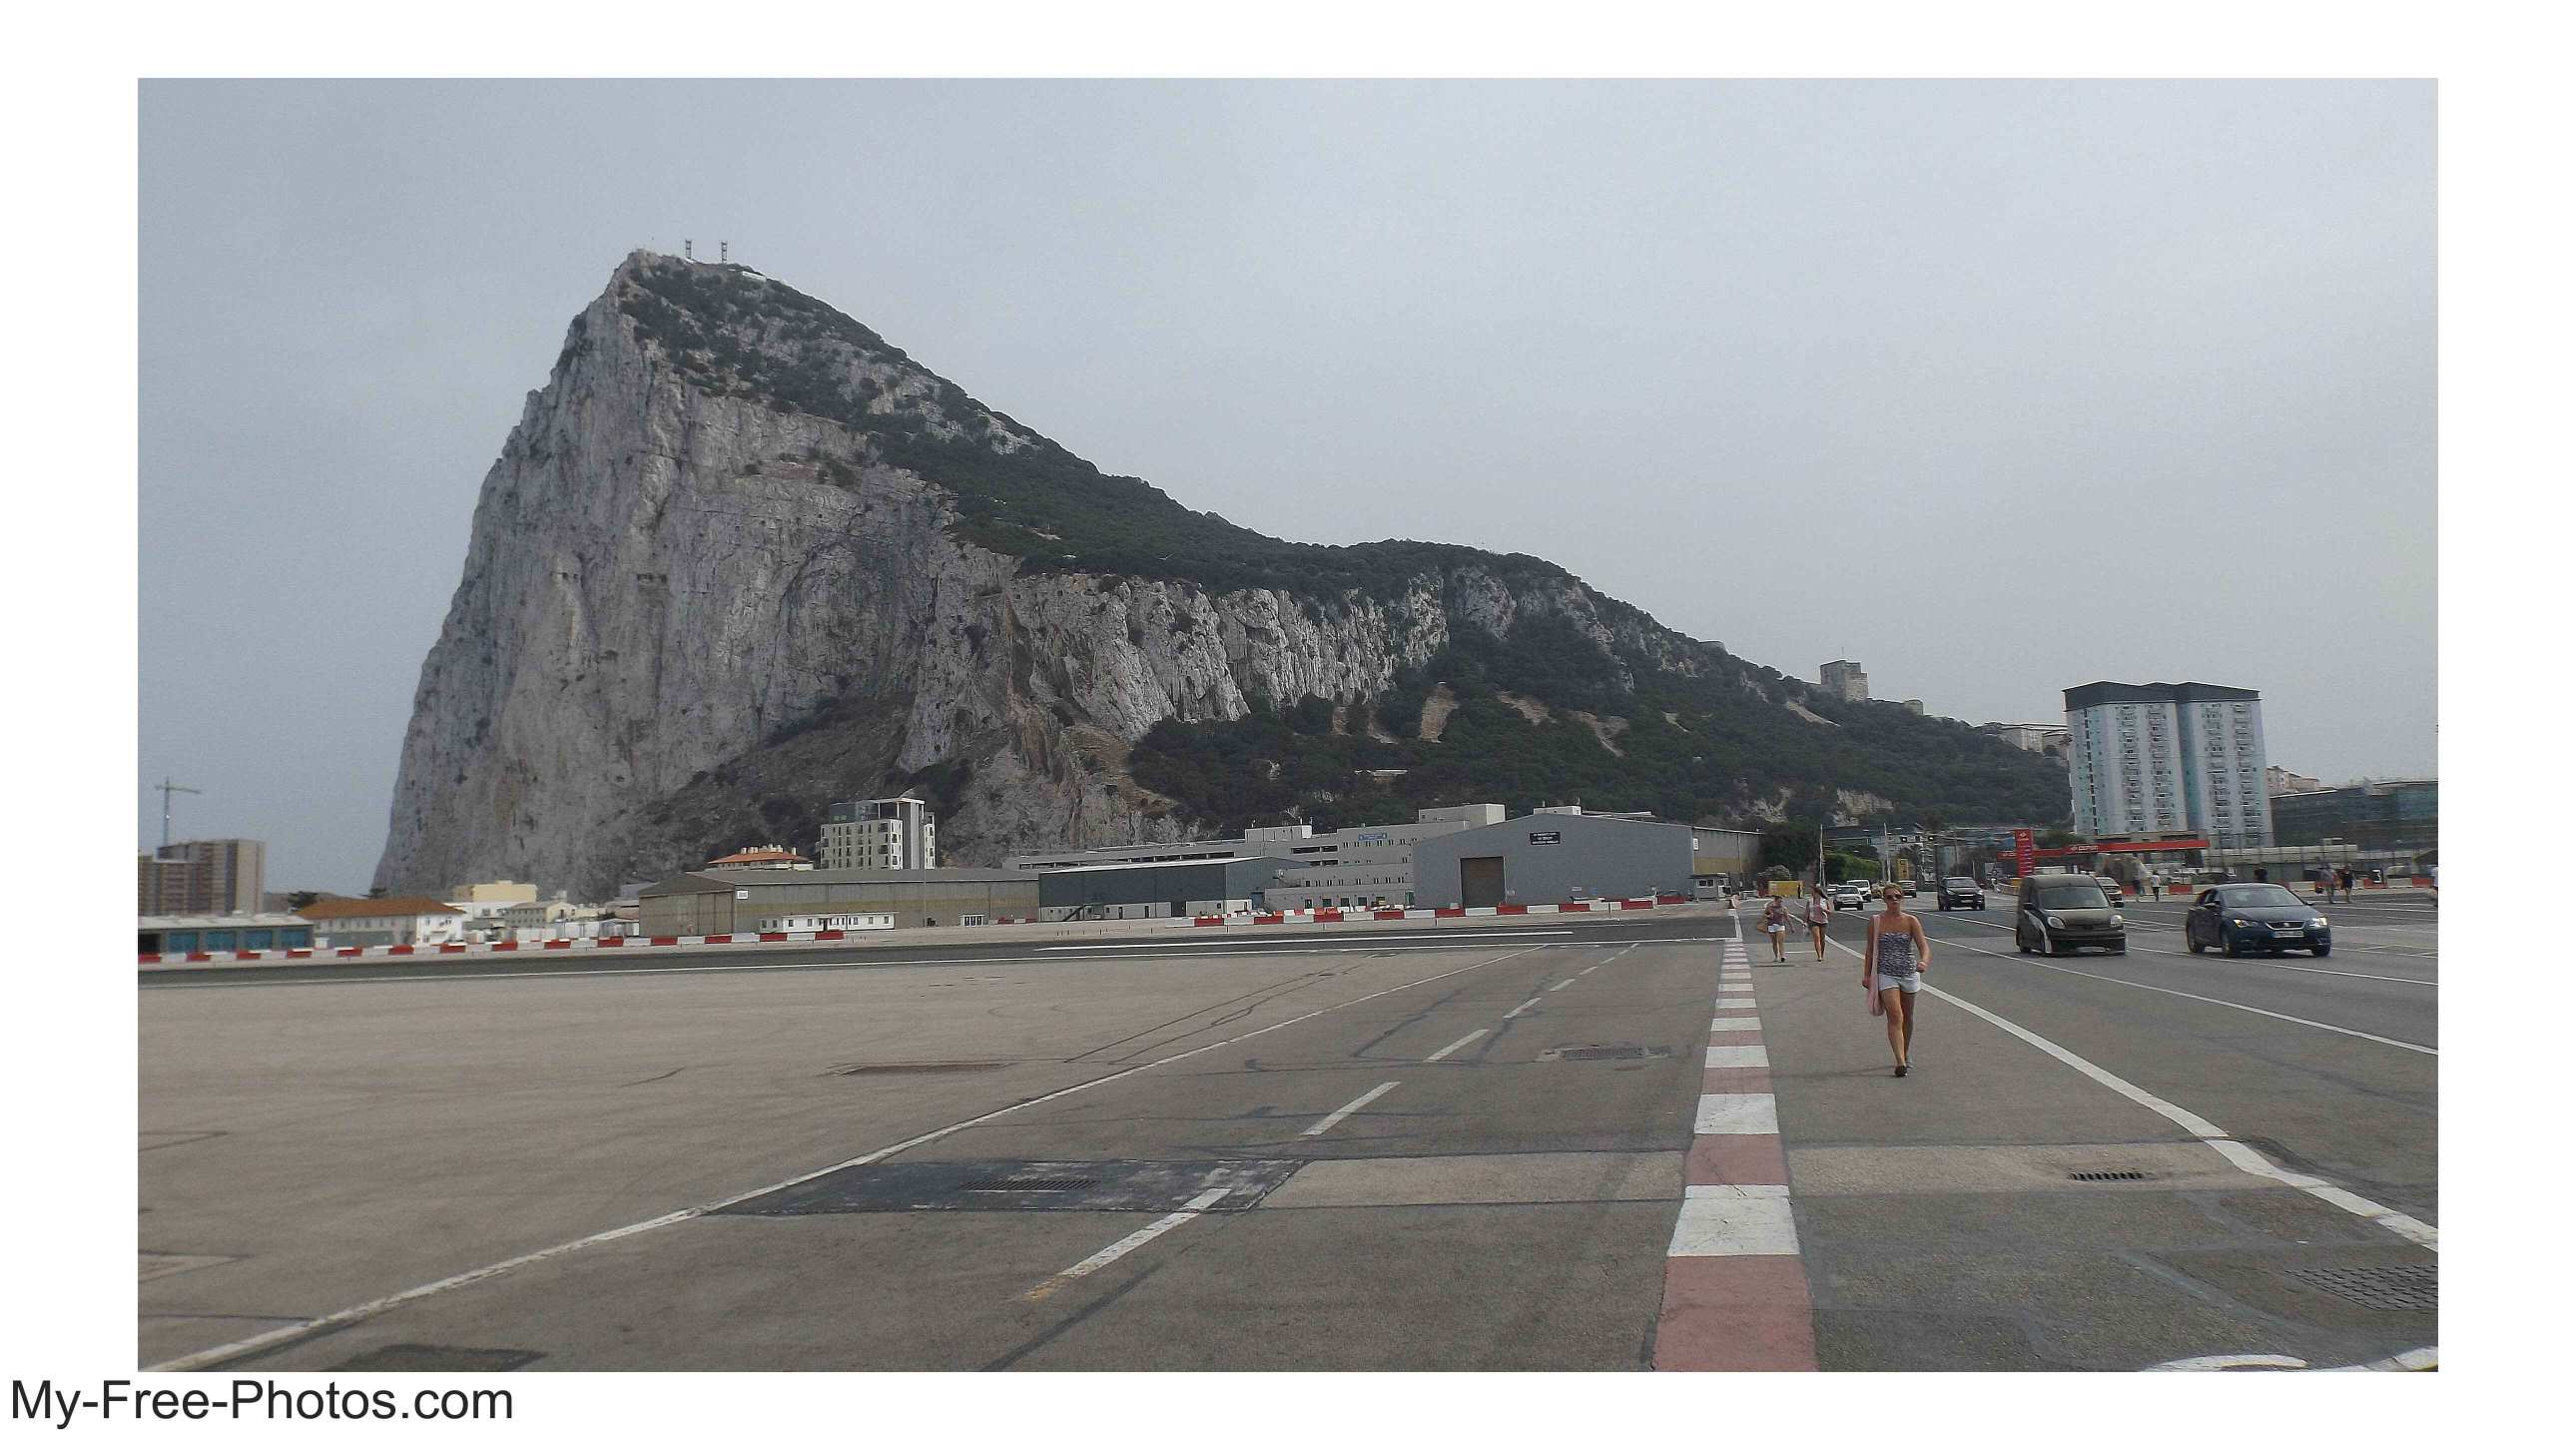  Gibraltar